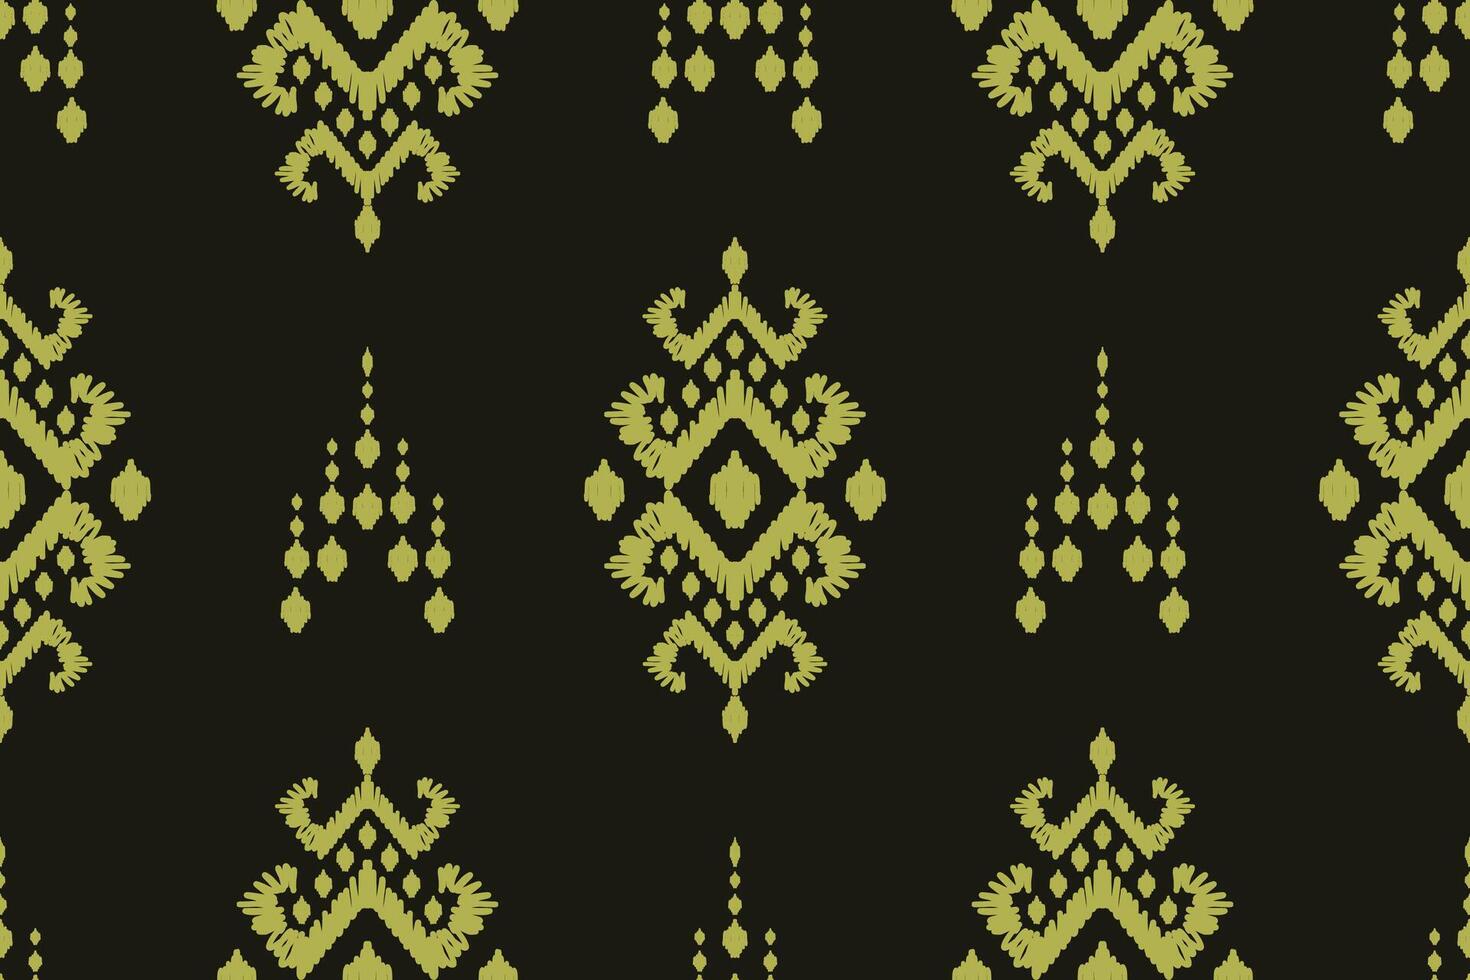 ikat tribal Indisch naadloos patroon. etnisch aztec kleding stof tapijt mandala ornament inheems boho chevron textiel.geometrisch Afrikaanse Amerikaans oosters traditioneel illustraties. borduurwerk stijl vector